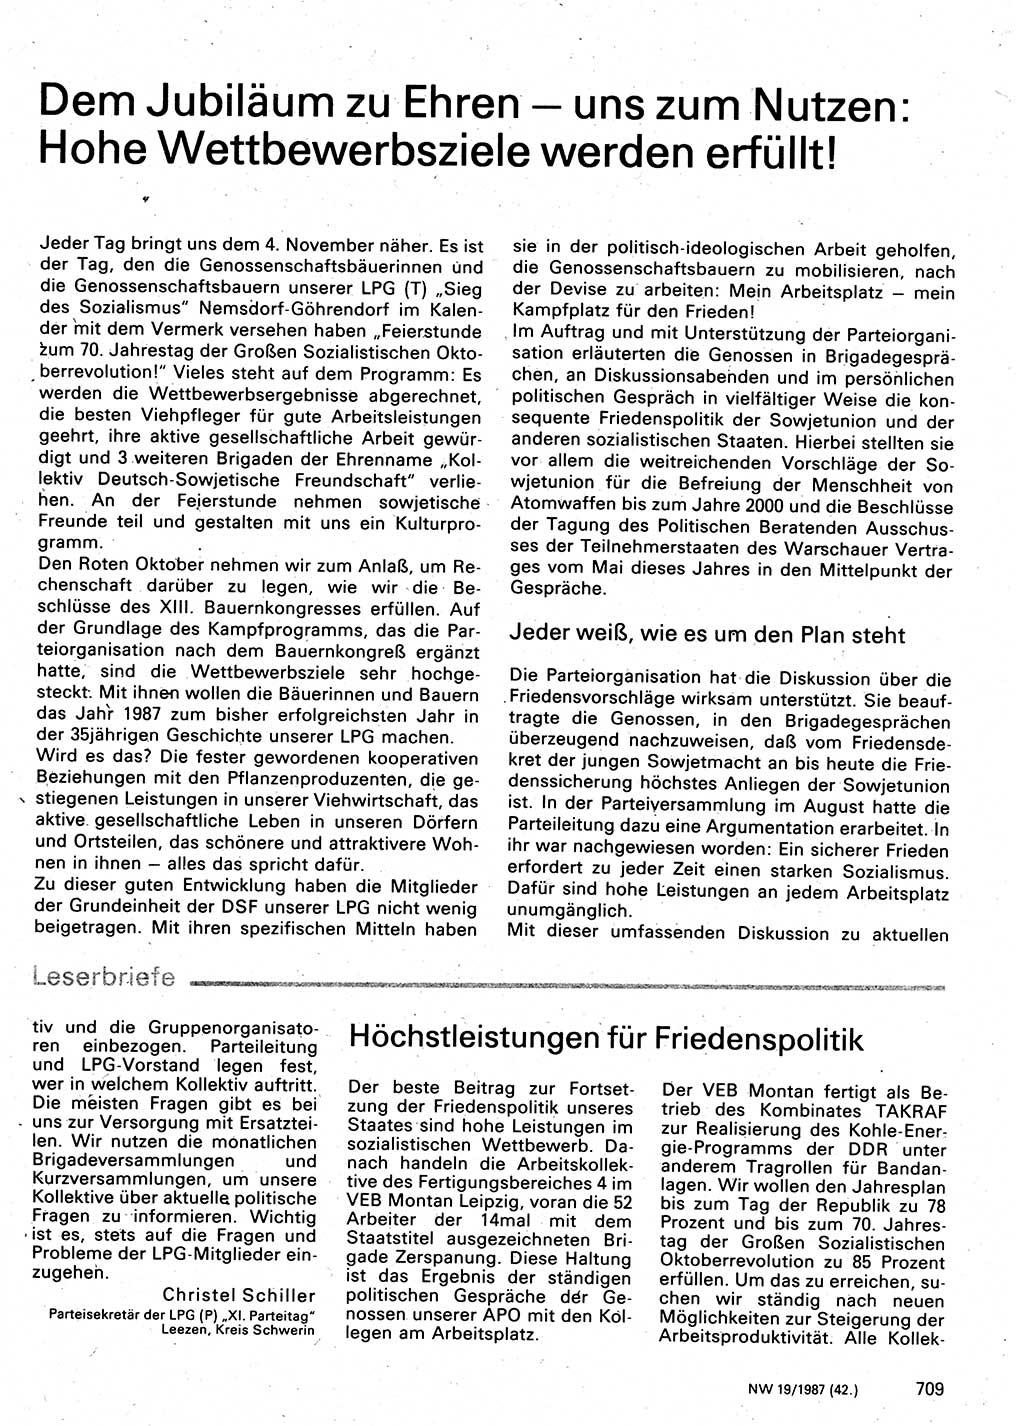 Neuer Weg (NW), Organ des Zentralkomitees (ZK) der SED (Sozialistische Einheitspartei Deutschlands) für Fragen des Parteilebens, 42. Jahrgang [Deutsche Demokratische Republik (DDR)] 1987, Seite 709 (NW ZK SED DDR 1987, S. 709)